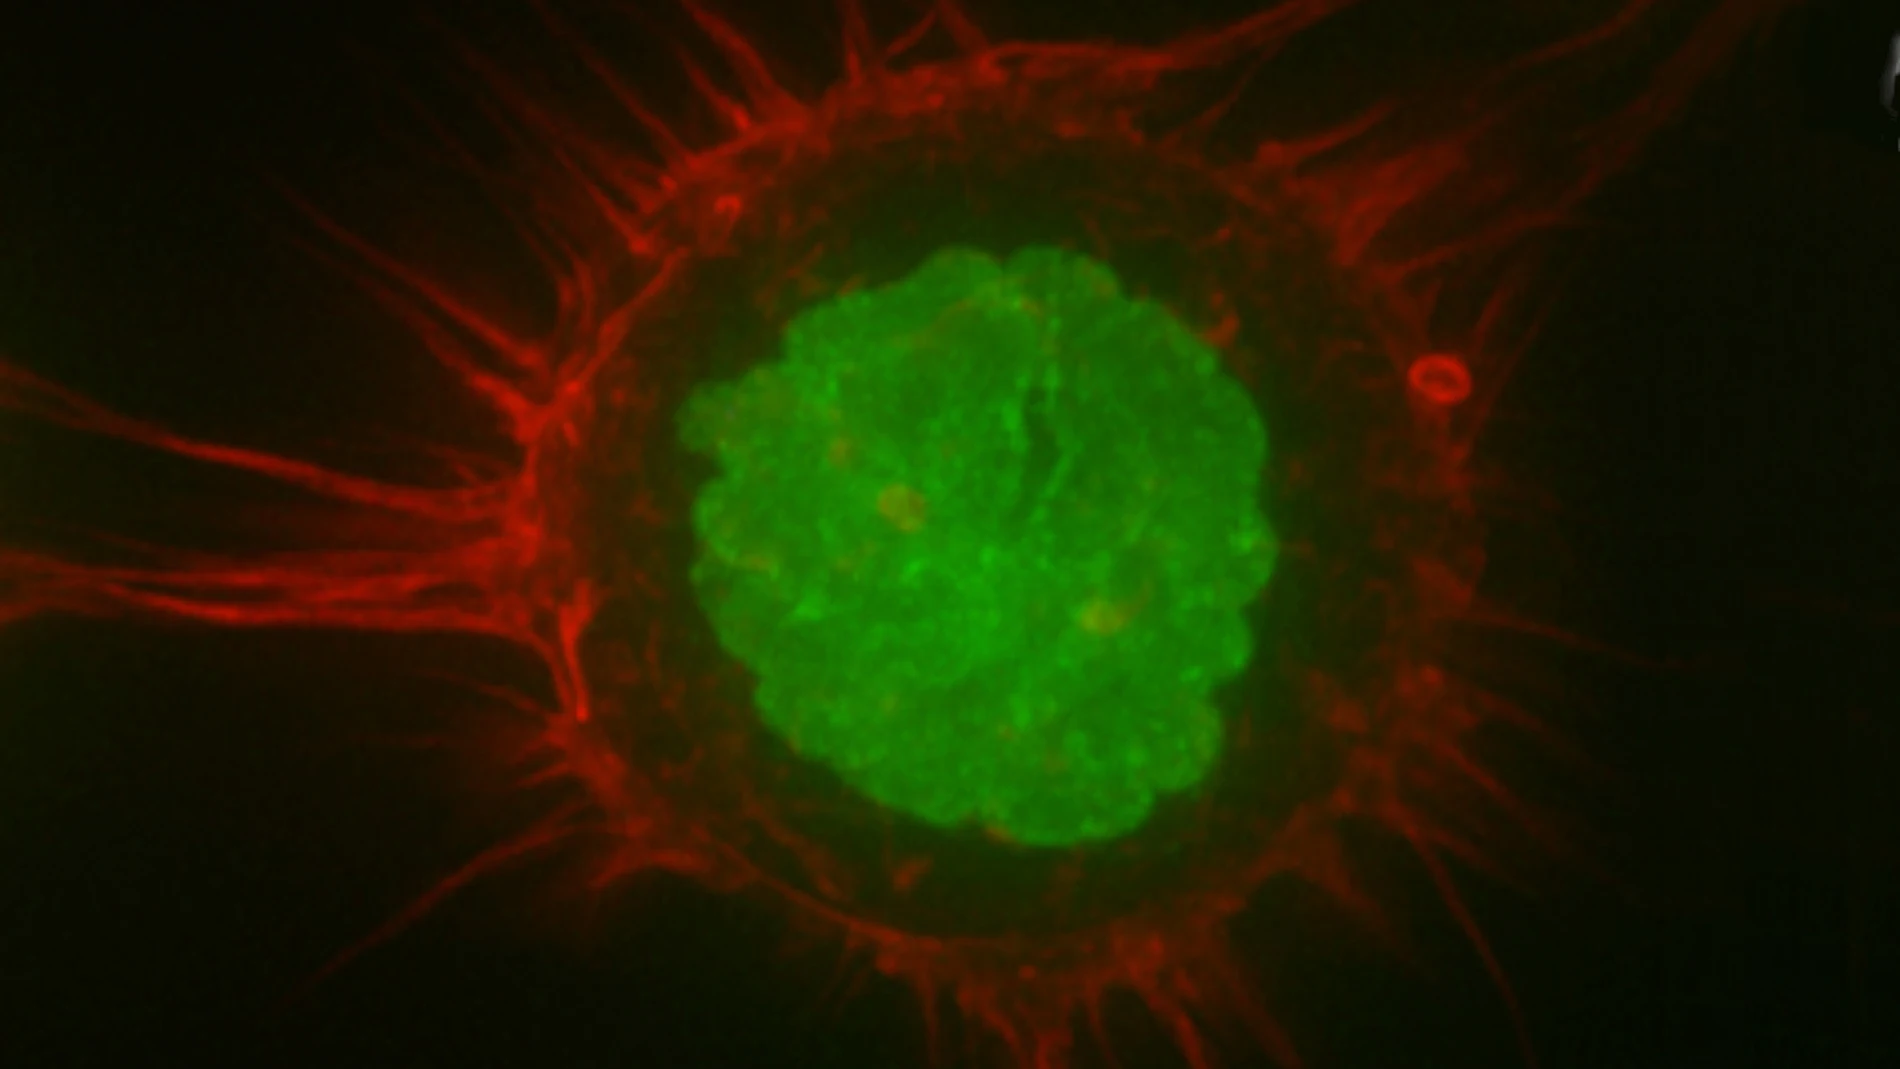 Imagen de una célula humana obtenida mediante microscopía de fluorescencia. Dos proteínas han sido marcadas con sustancias fluorescentes para poder resaltar diferentes partes de la célula. En rojo vemos las fibras de actina, que en este caso están localizadas sobre todo en el córtex celular, con lo que este color nos permite visualizar la “piel” de la célula. En verde se ha marcado una histona, una proteína que forma parte de los cromosomas, así que en este color podemos ver el núcleo de la célula. La imagen es tan precisa que podemos apreciar las “arrugas” características del material nuclear. La barra de escala, en blanco en la parte inferior, mide 10 micras.